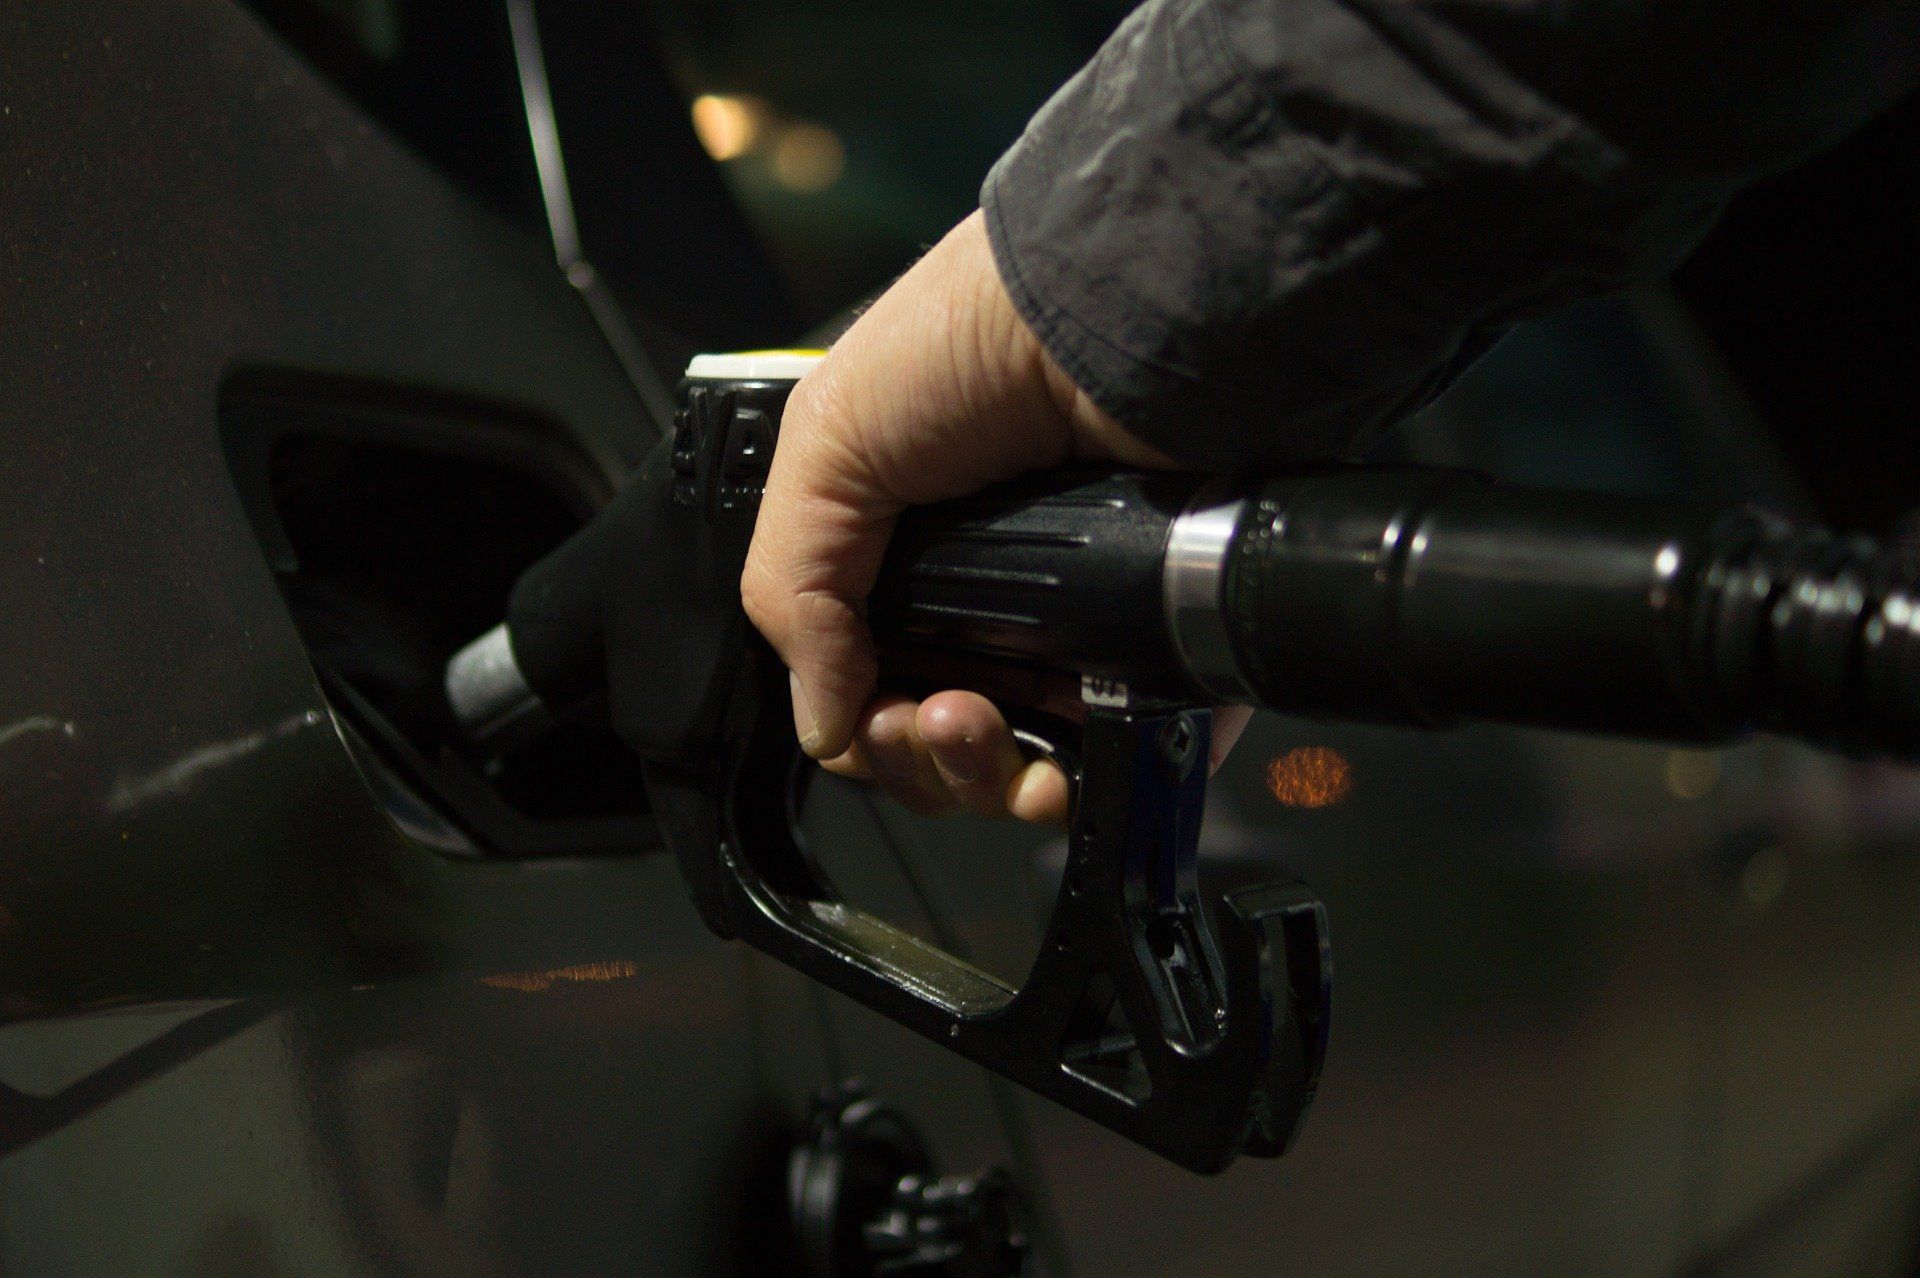 Fuel price June 8, 2022: Petrol Rs 96.72, diesel Rs 89.62 in Delhi